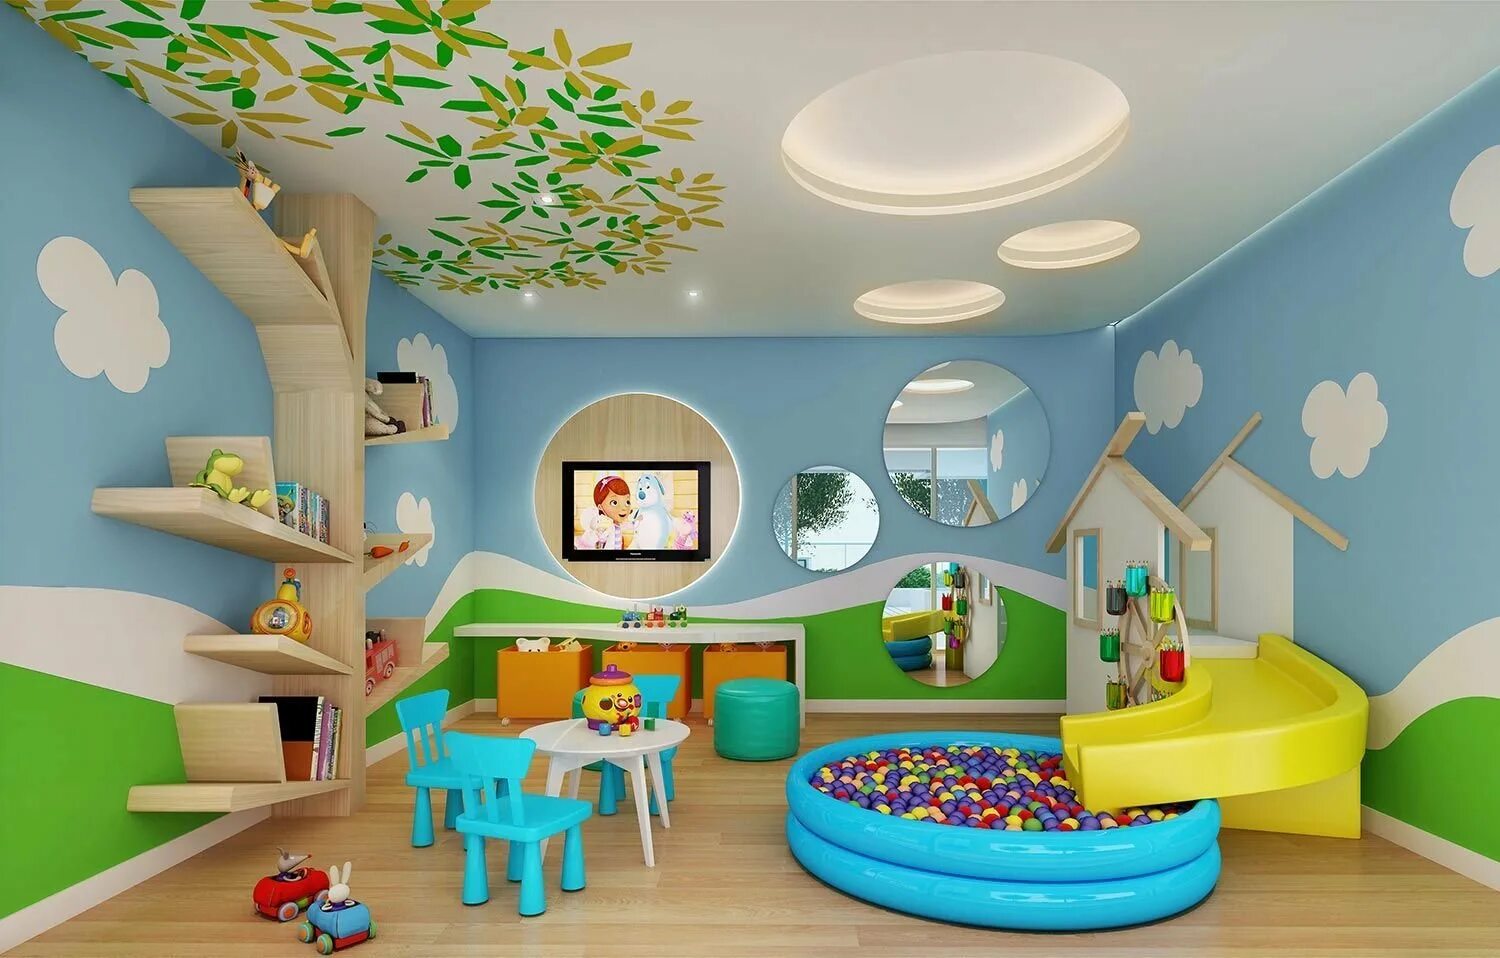 Описание детской комнаты в детском саду. Интерьер игровой комнаты. Игровая комната для малышей. Детский интерьер. Интерьер стен в детском саду.